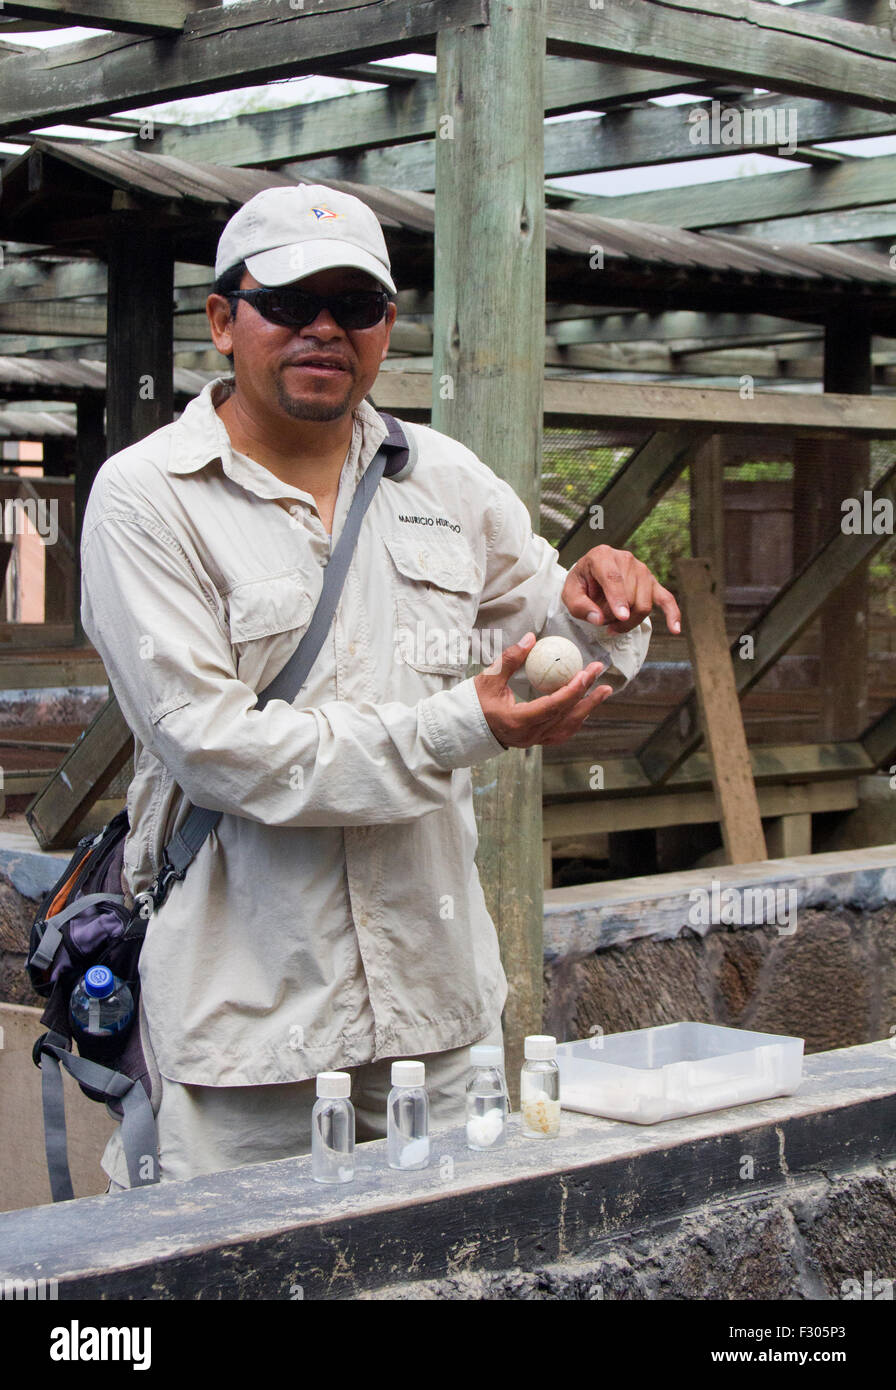 Anleitung erklärt, die Zucht von Schildkröten am Centro de Crianza de Tortugas Terrestres, Isabela Island, Galapagos-Inseln Stockfoto